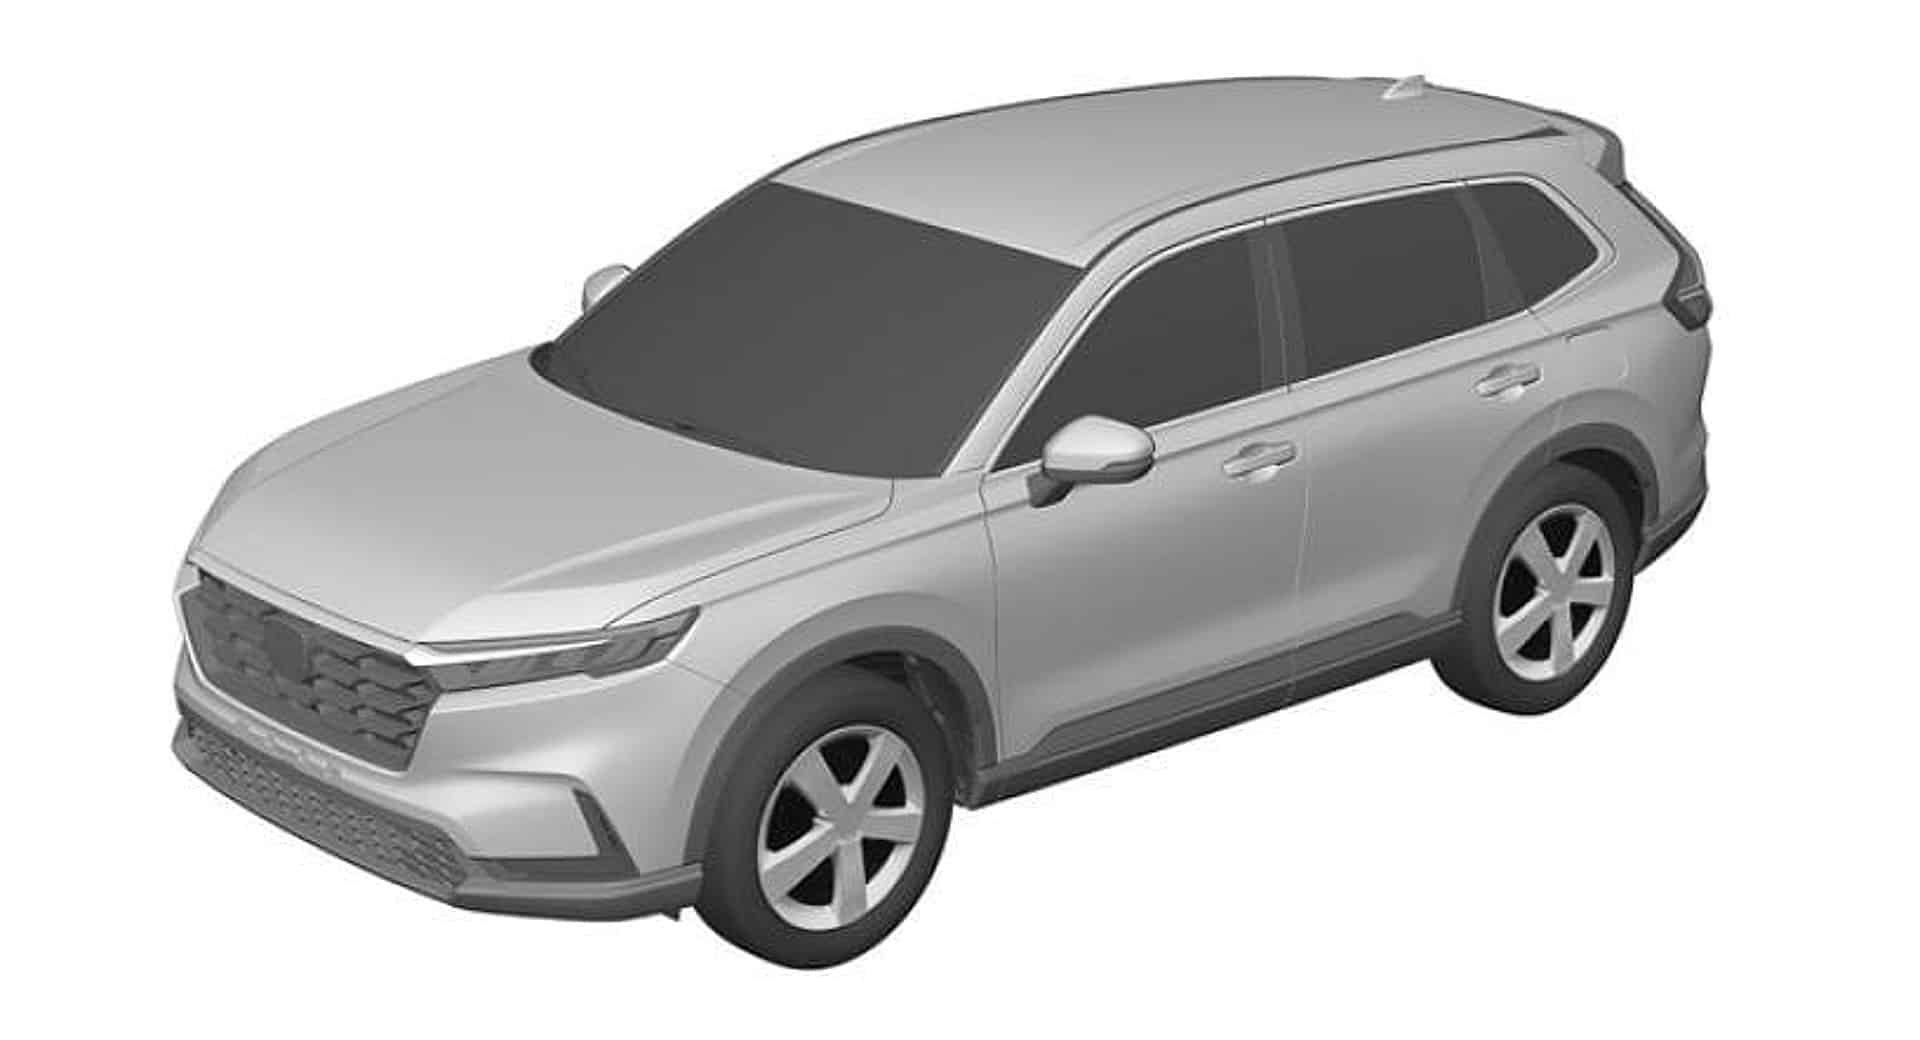 2023 Honda CR-V patent rendering|2022 Ford Bronco